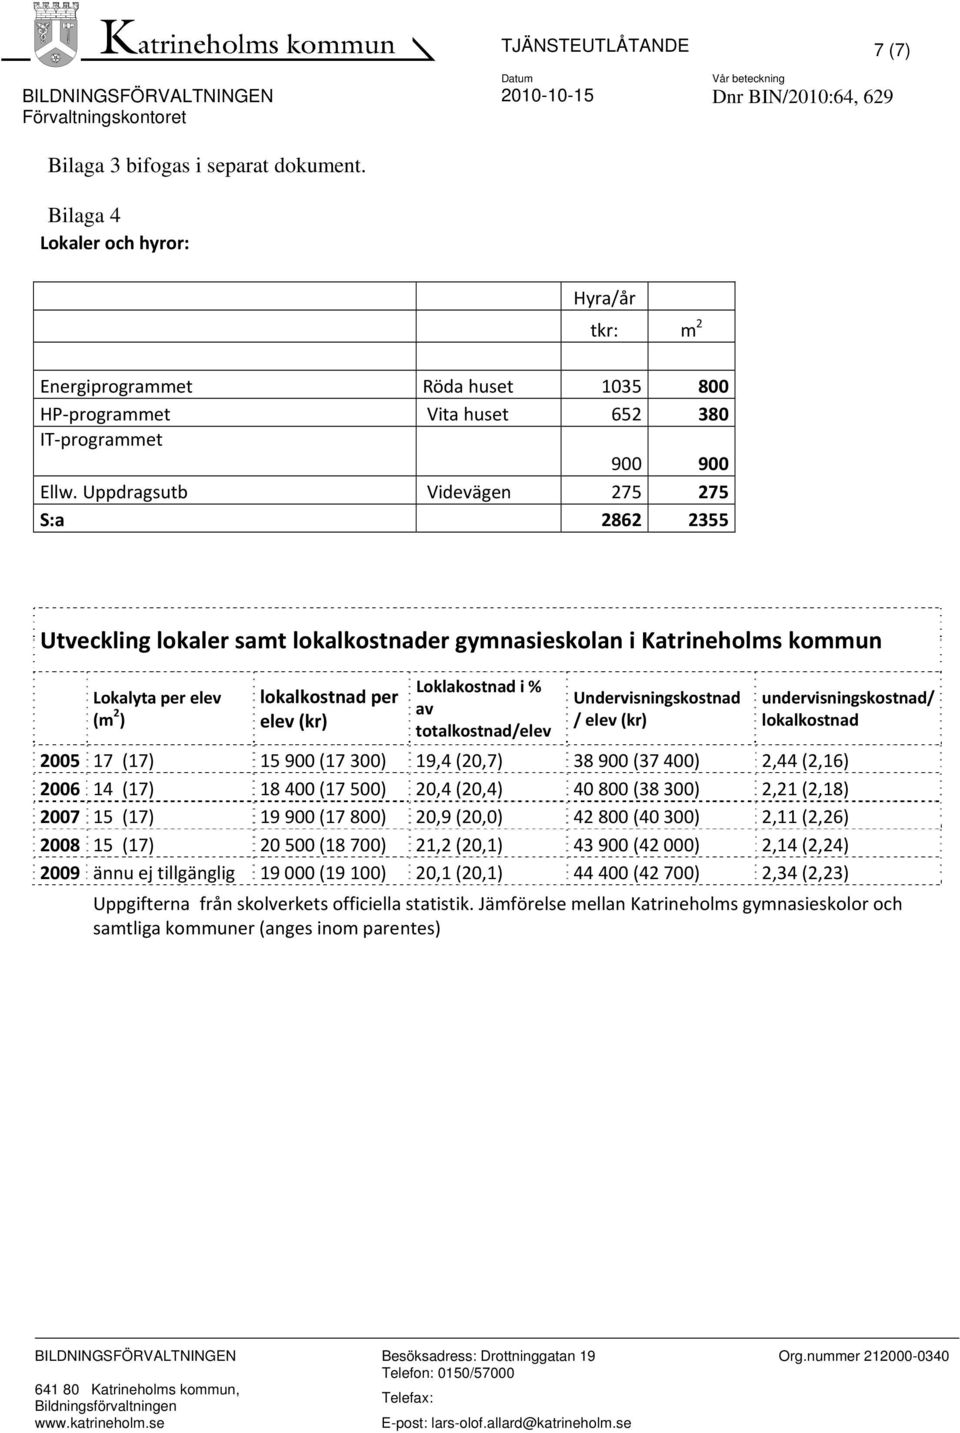 Uppdragsutb Videvägen 275 275 S:a 2862 2355 Utveckling lokaler samt lokalkostnader gymnasieskolan i Katrineholms kommun Lokalyta per elev (m 2 ) lokalkostnad per elev (kr) Loklakostnad i % av